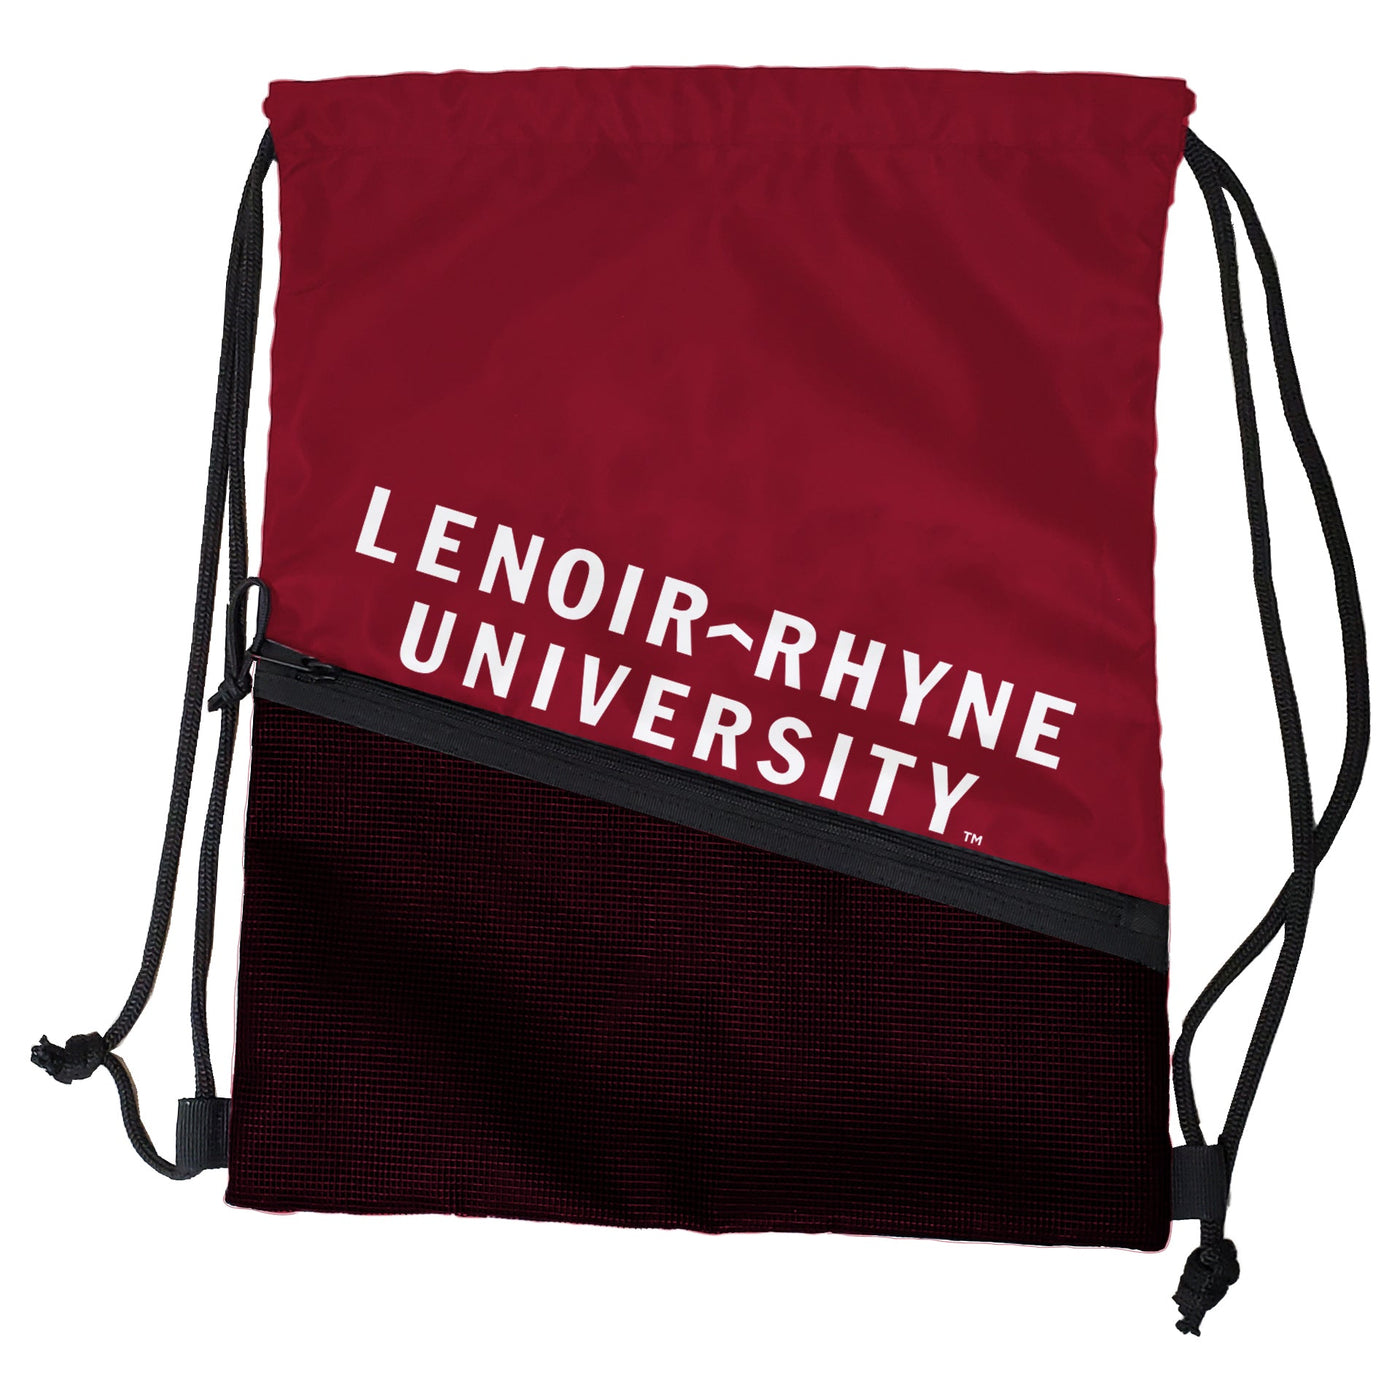 Lenoir Rhyne Tilt Backsack - Logo Brands